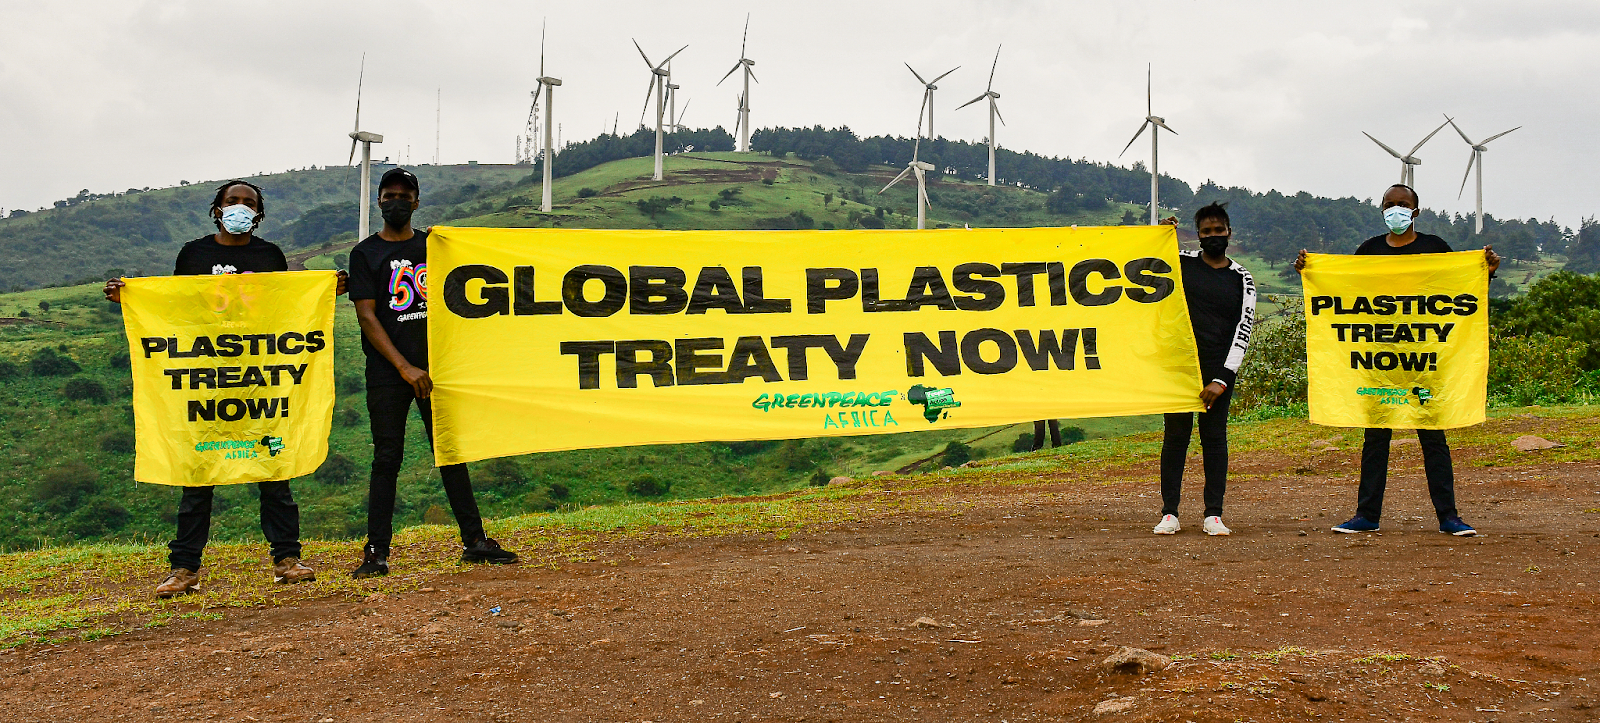 Plastic Treaty